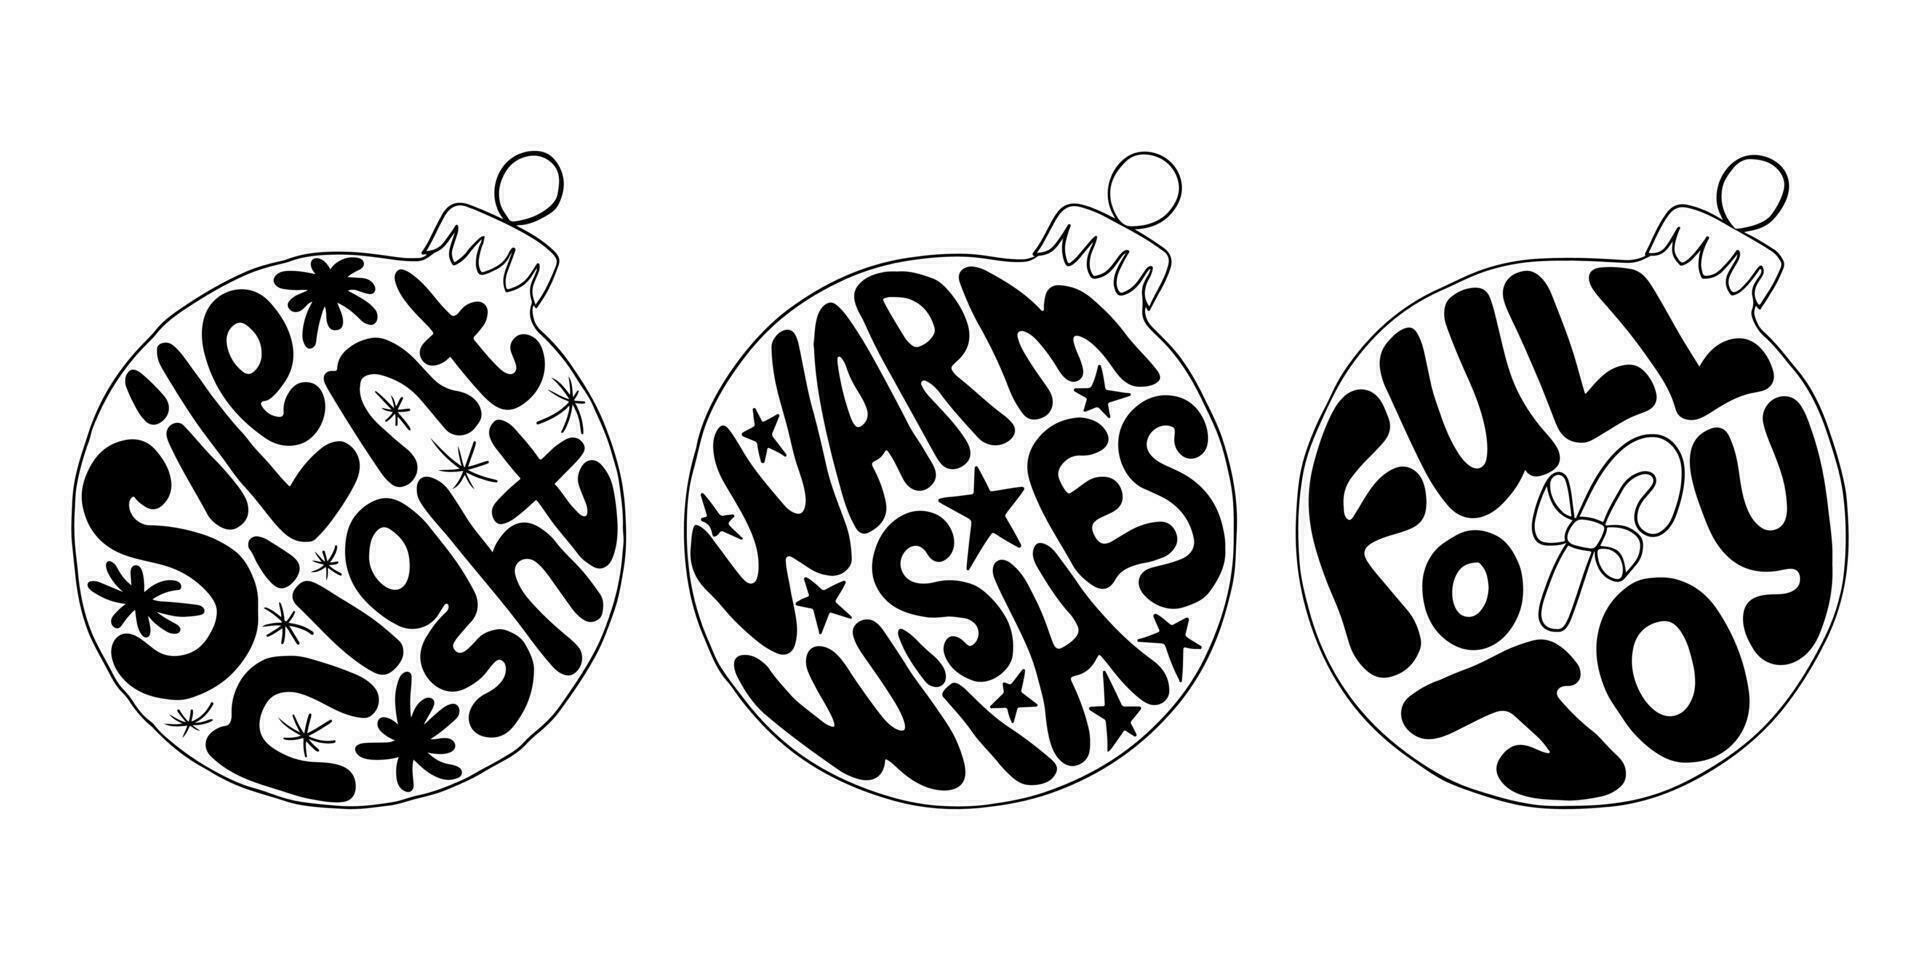 svart och vit häftig jul text i jul bollar. typografisk årgång hippie kompositioner för Skriv ut, klistermärken, dekoration. vinter- Semester slagord i retro hippie hand dragen stil vektor